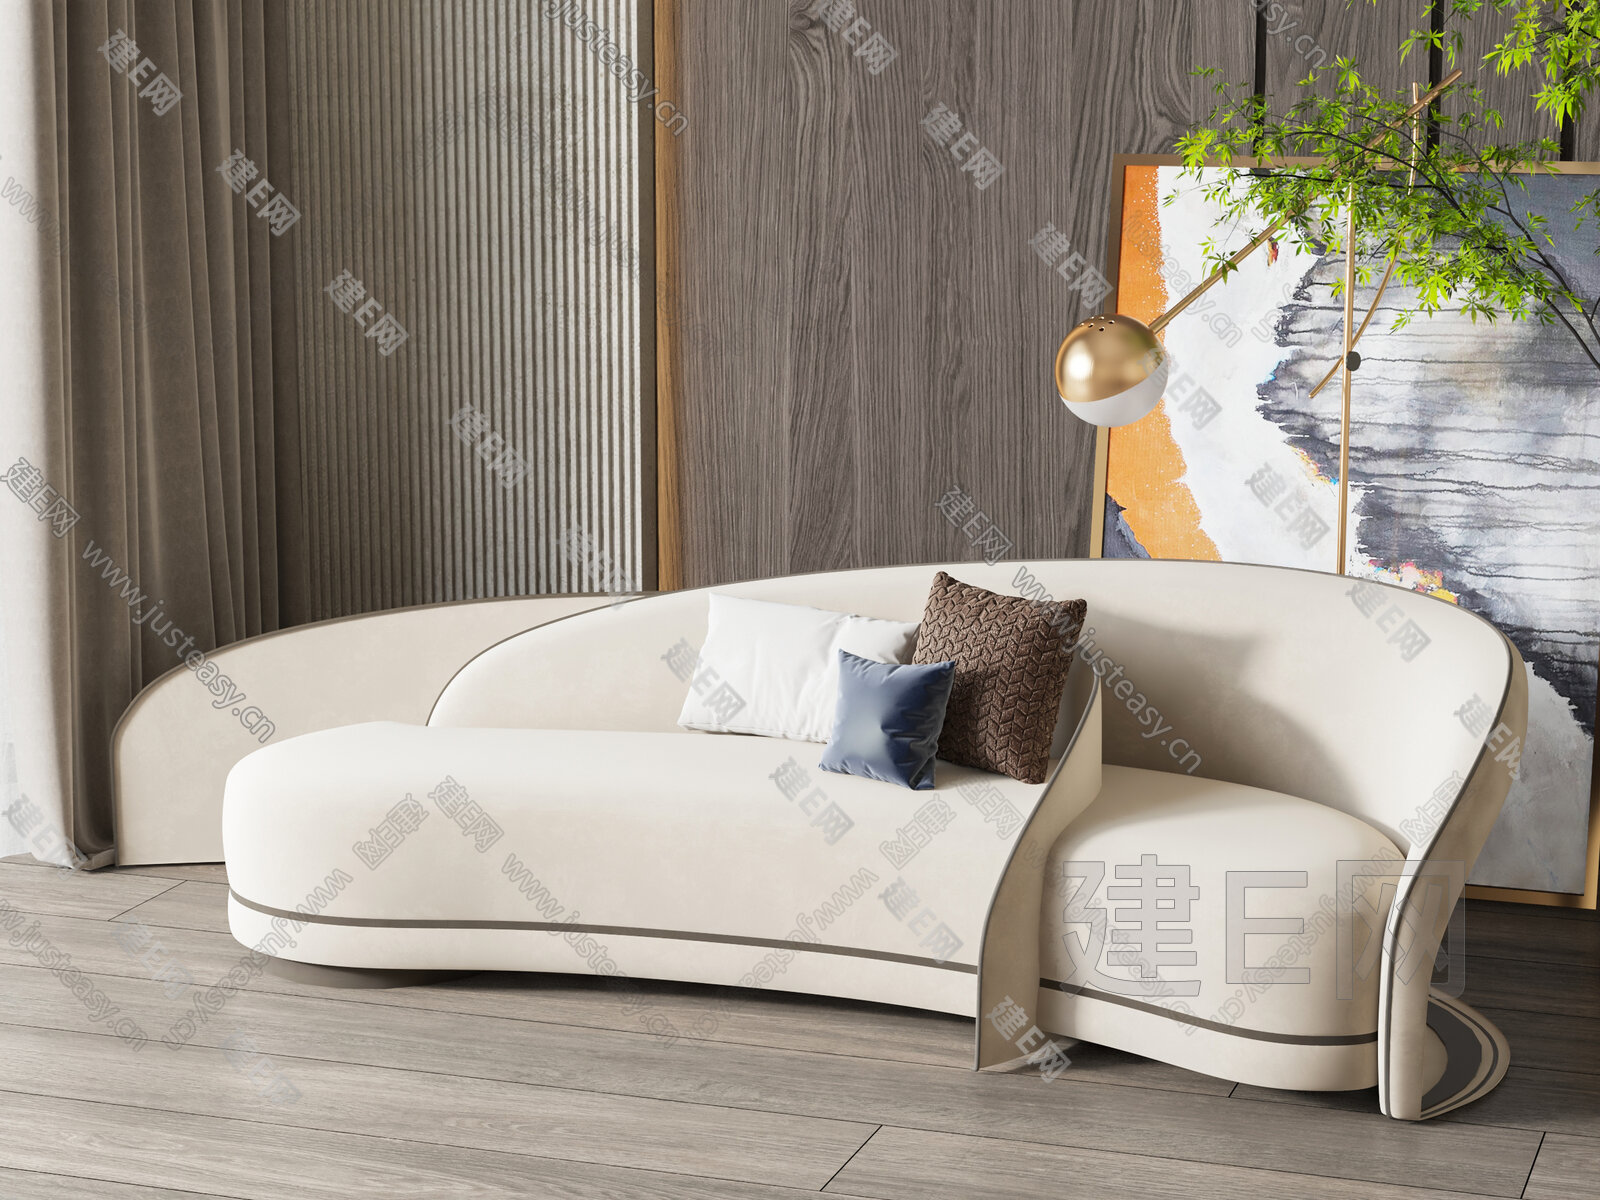 弧形木质沙发设计现代风格客厅装修效果图_蛙客网viwik.com